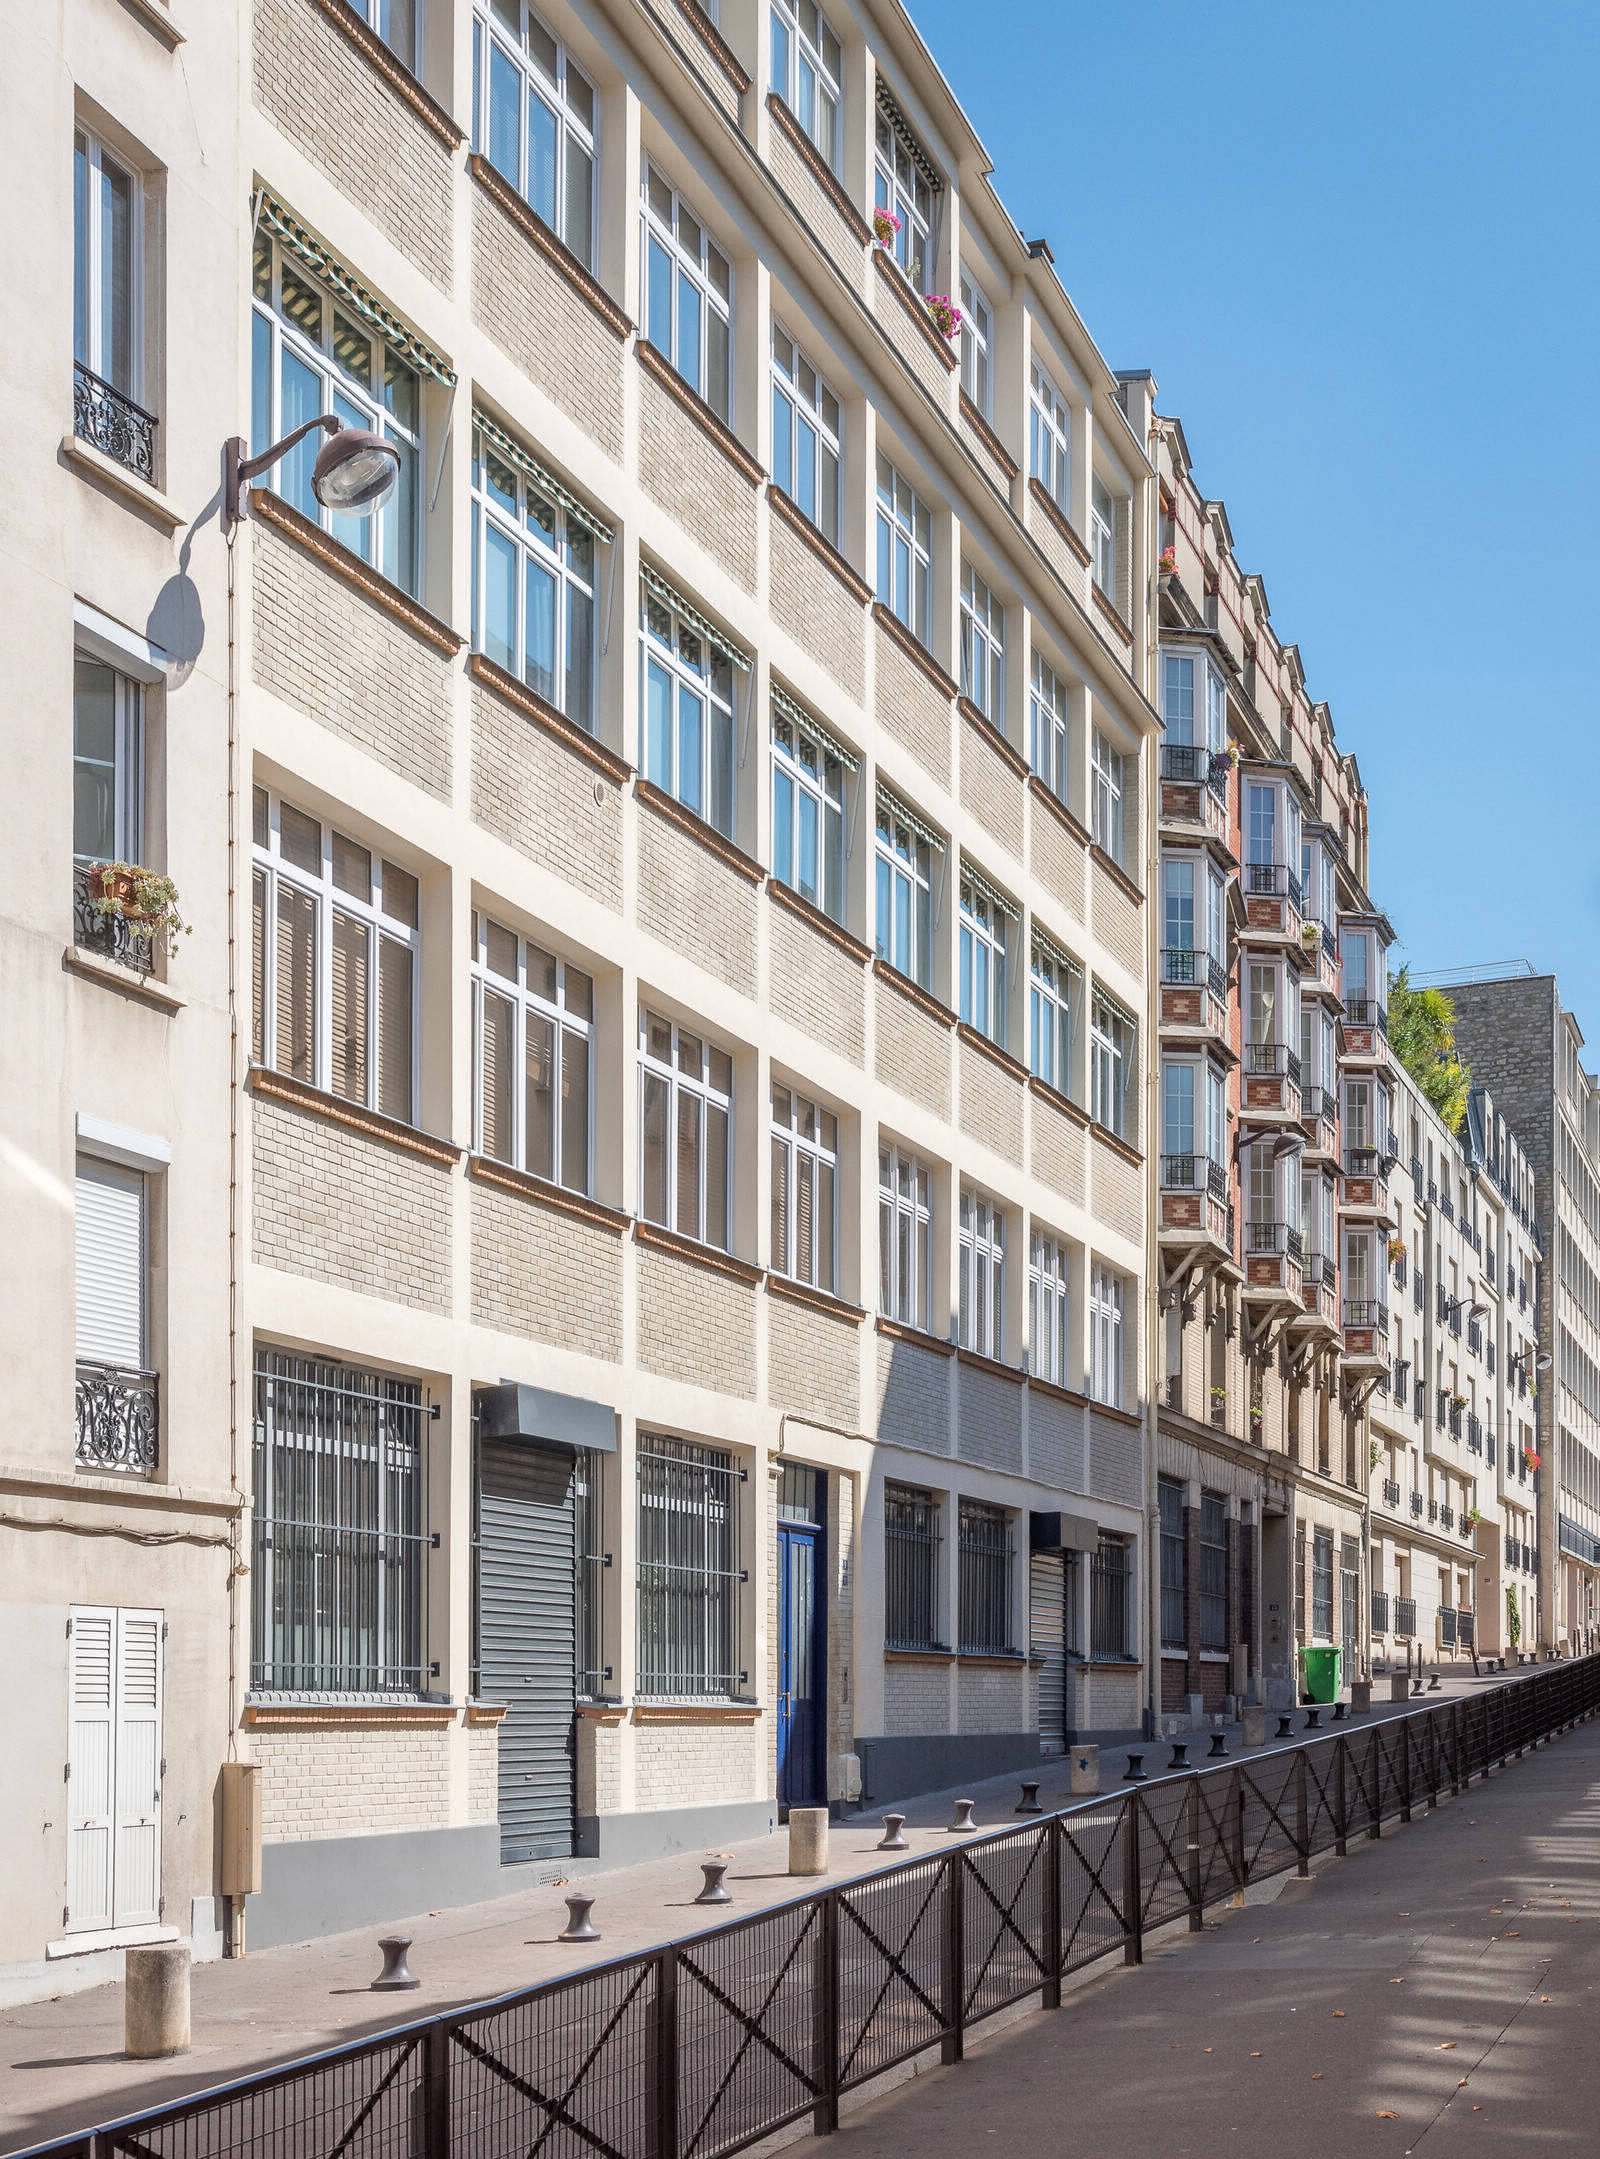 Проект Voltaire в одиннадцатом округе Парижа